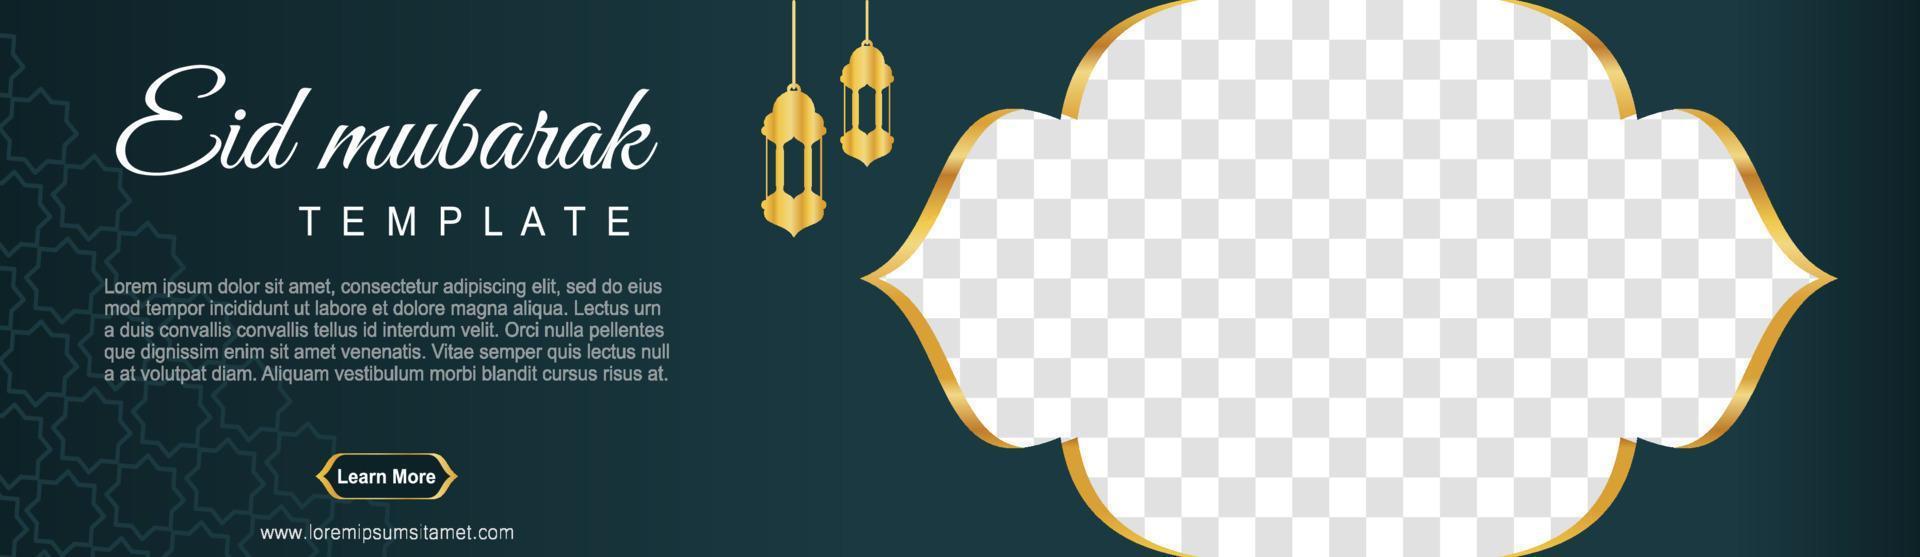 uppsättning ramadan webbbanners av standardstorlek med en plats för bilder. ramadan malldesign. vektor illustration